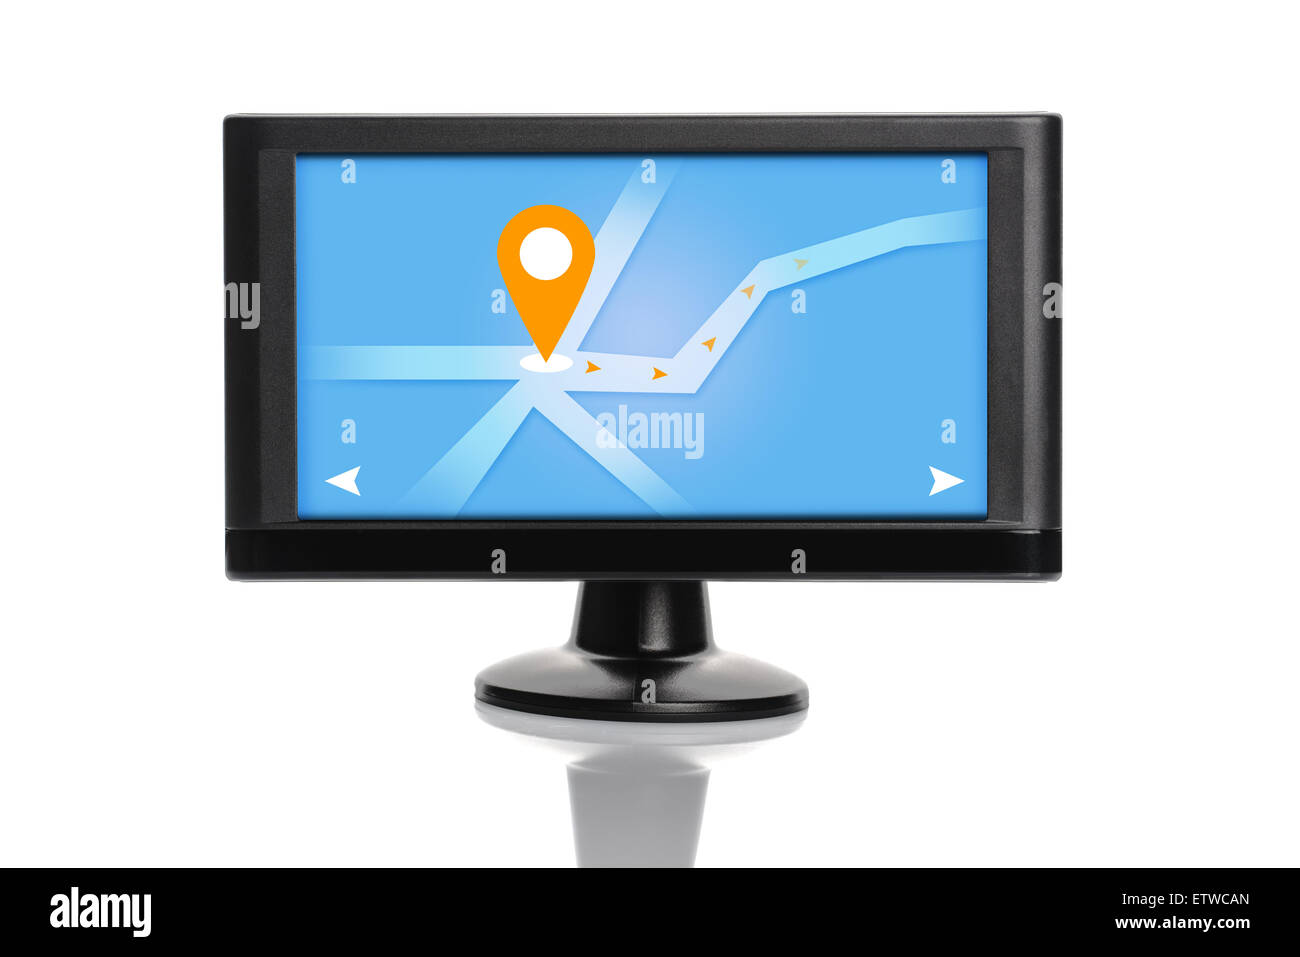 Di navigazione GPS per auto dispositivo con illustrazione concettuale che sullo schermo isolato su sfondo bianco Foto Stock